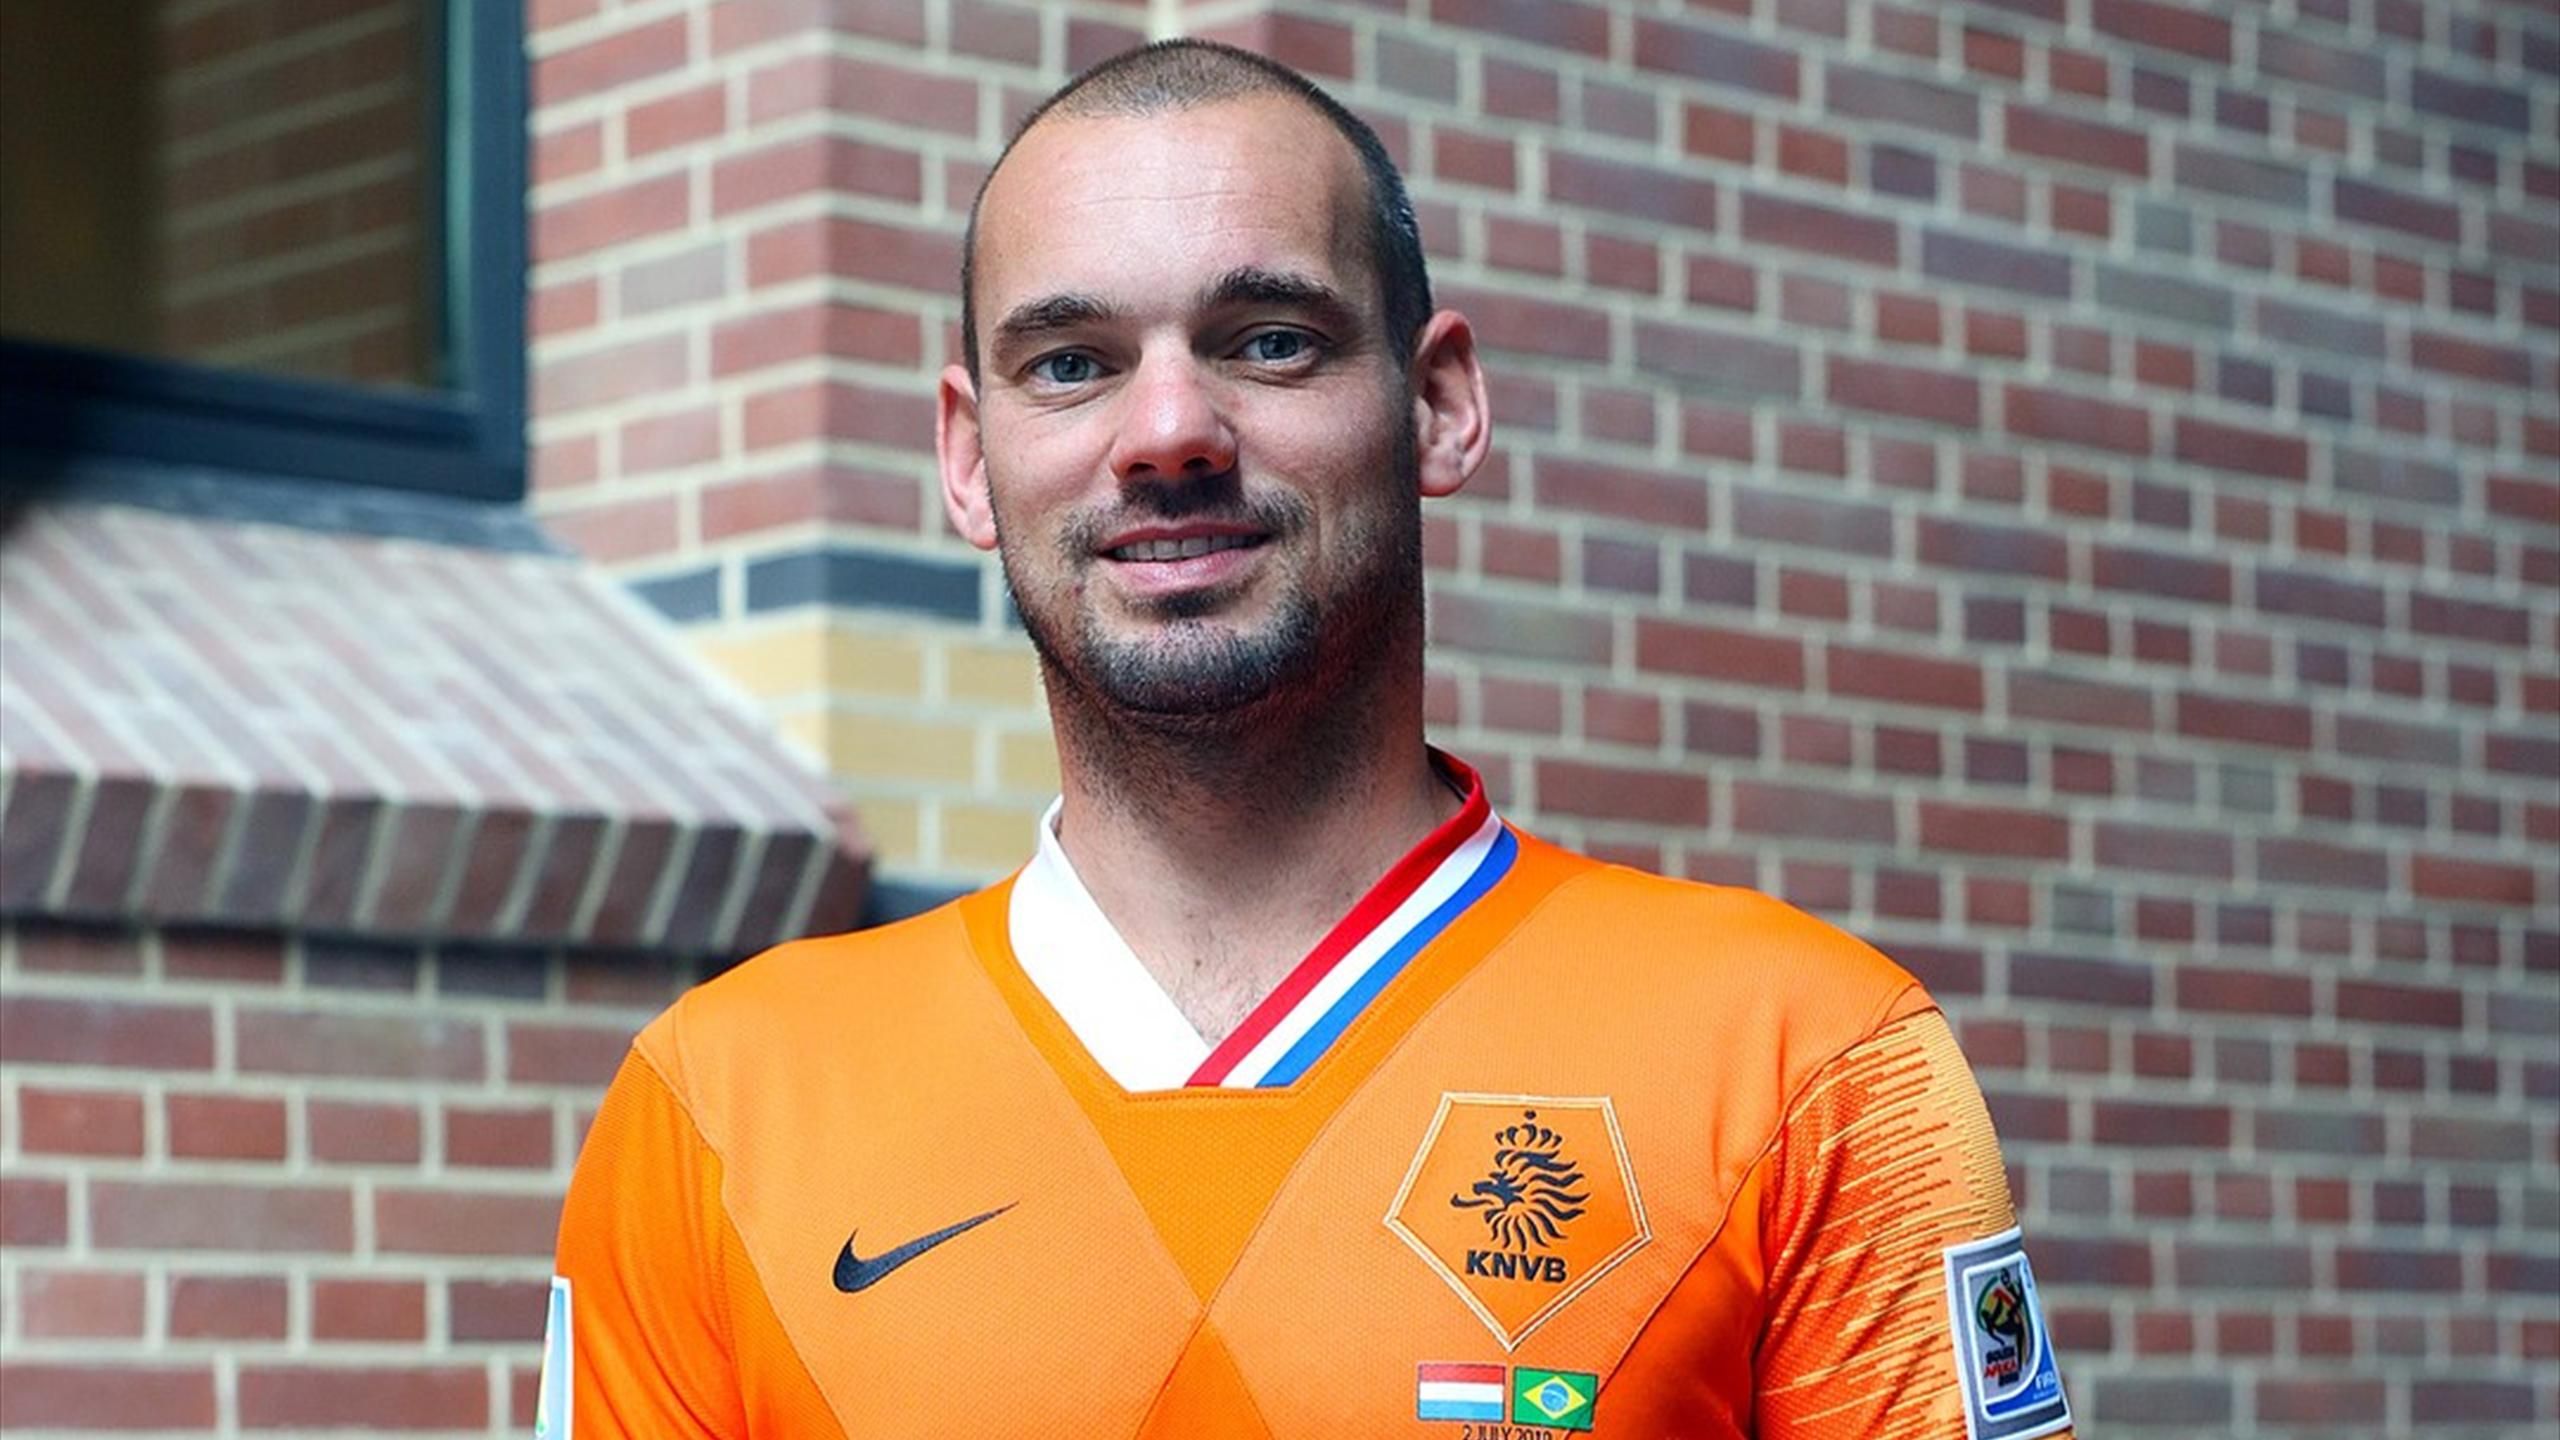 La de selección holandesa como homenaje a Sneijder - Eurosport